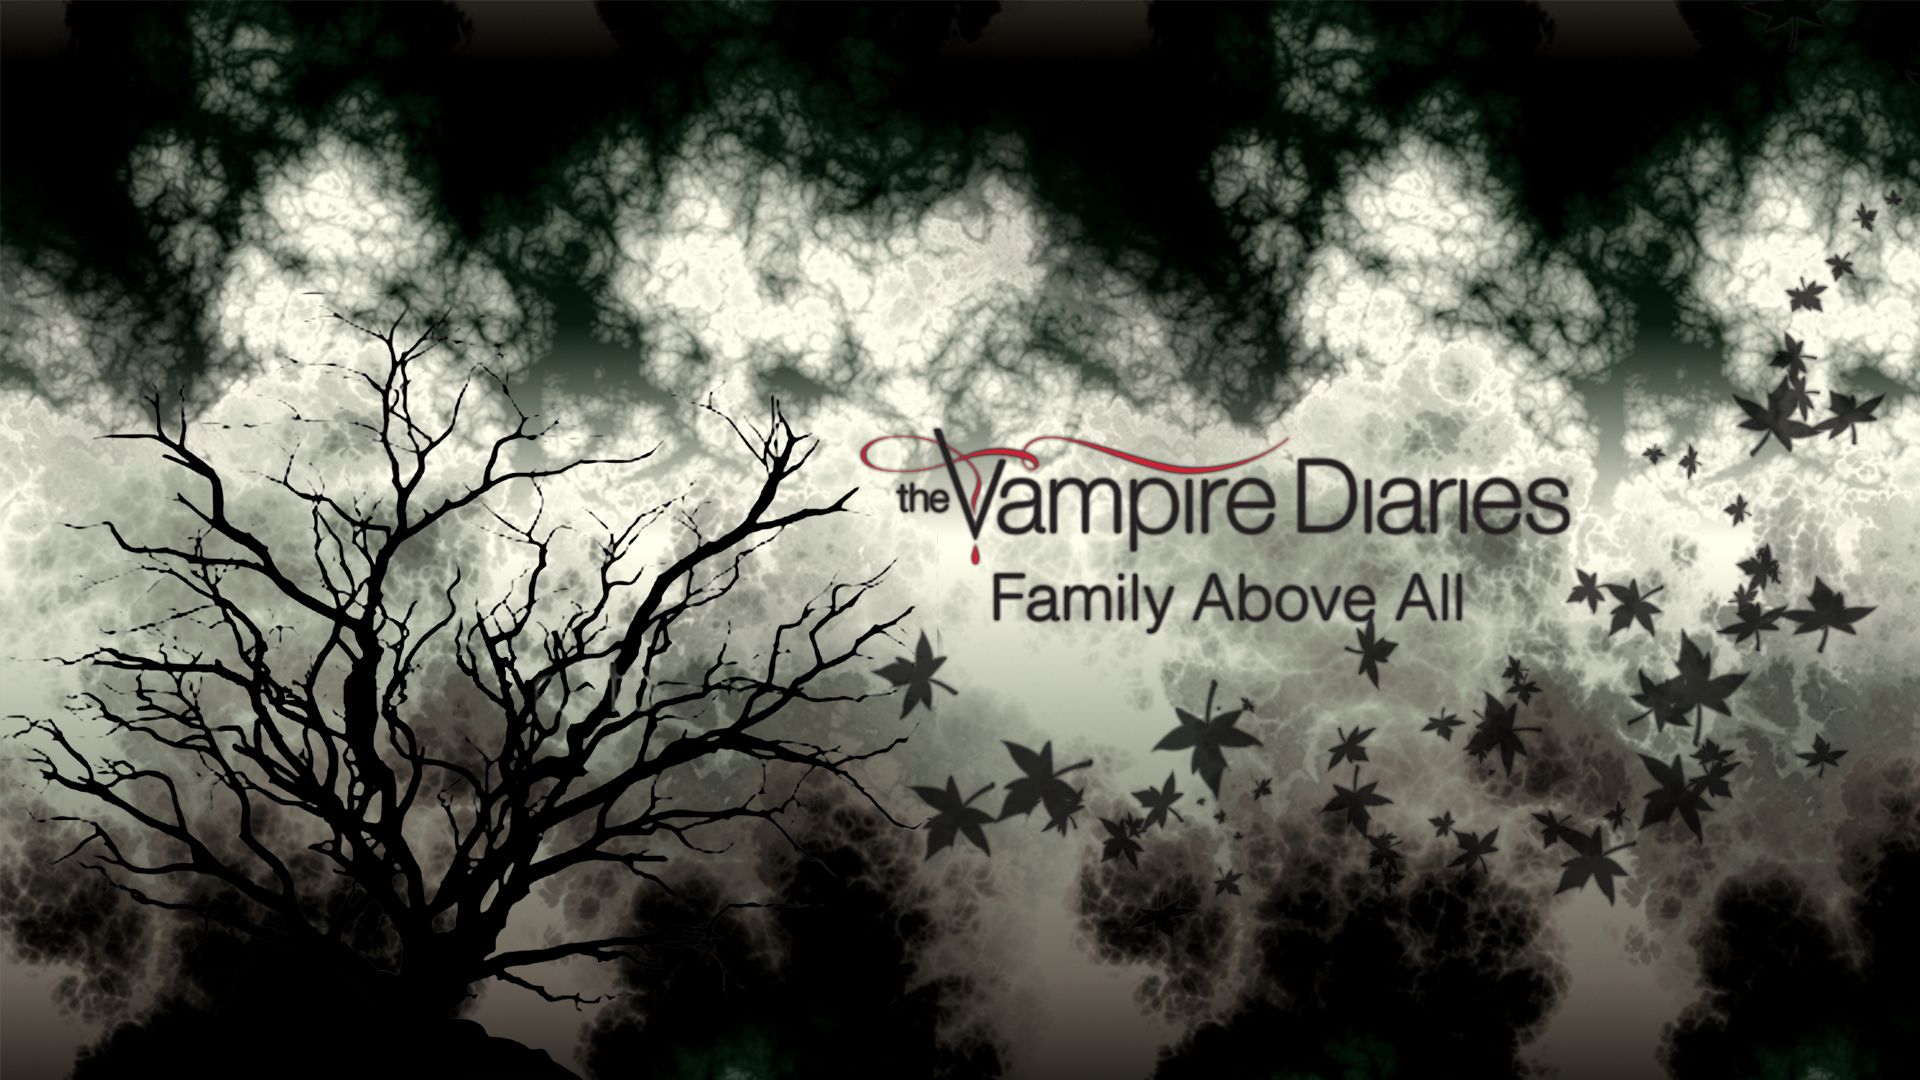 Free download The Vampire Diaries Wallpaper Series The Vampire Diaries Wallpaper [1920x1080] for your Desktop, Mobile & Tablet. Explore Vampire Diaries Background. The Vampire Diaries Wallpaper, Vampire Diaries All